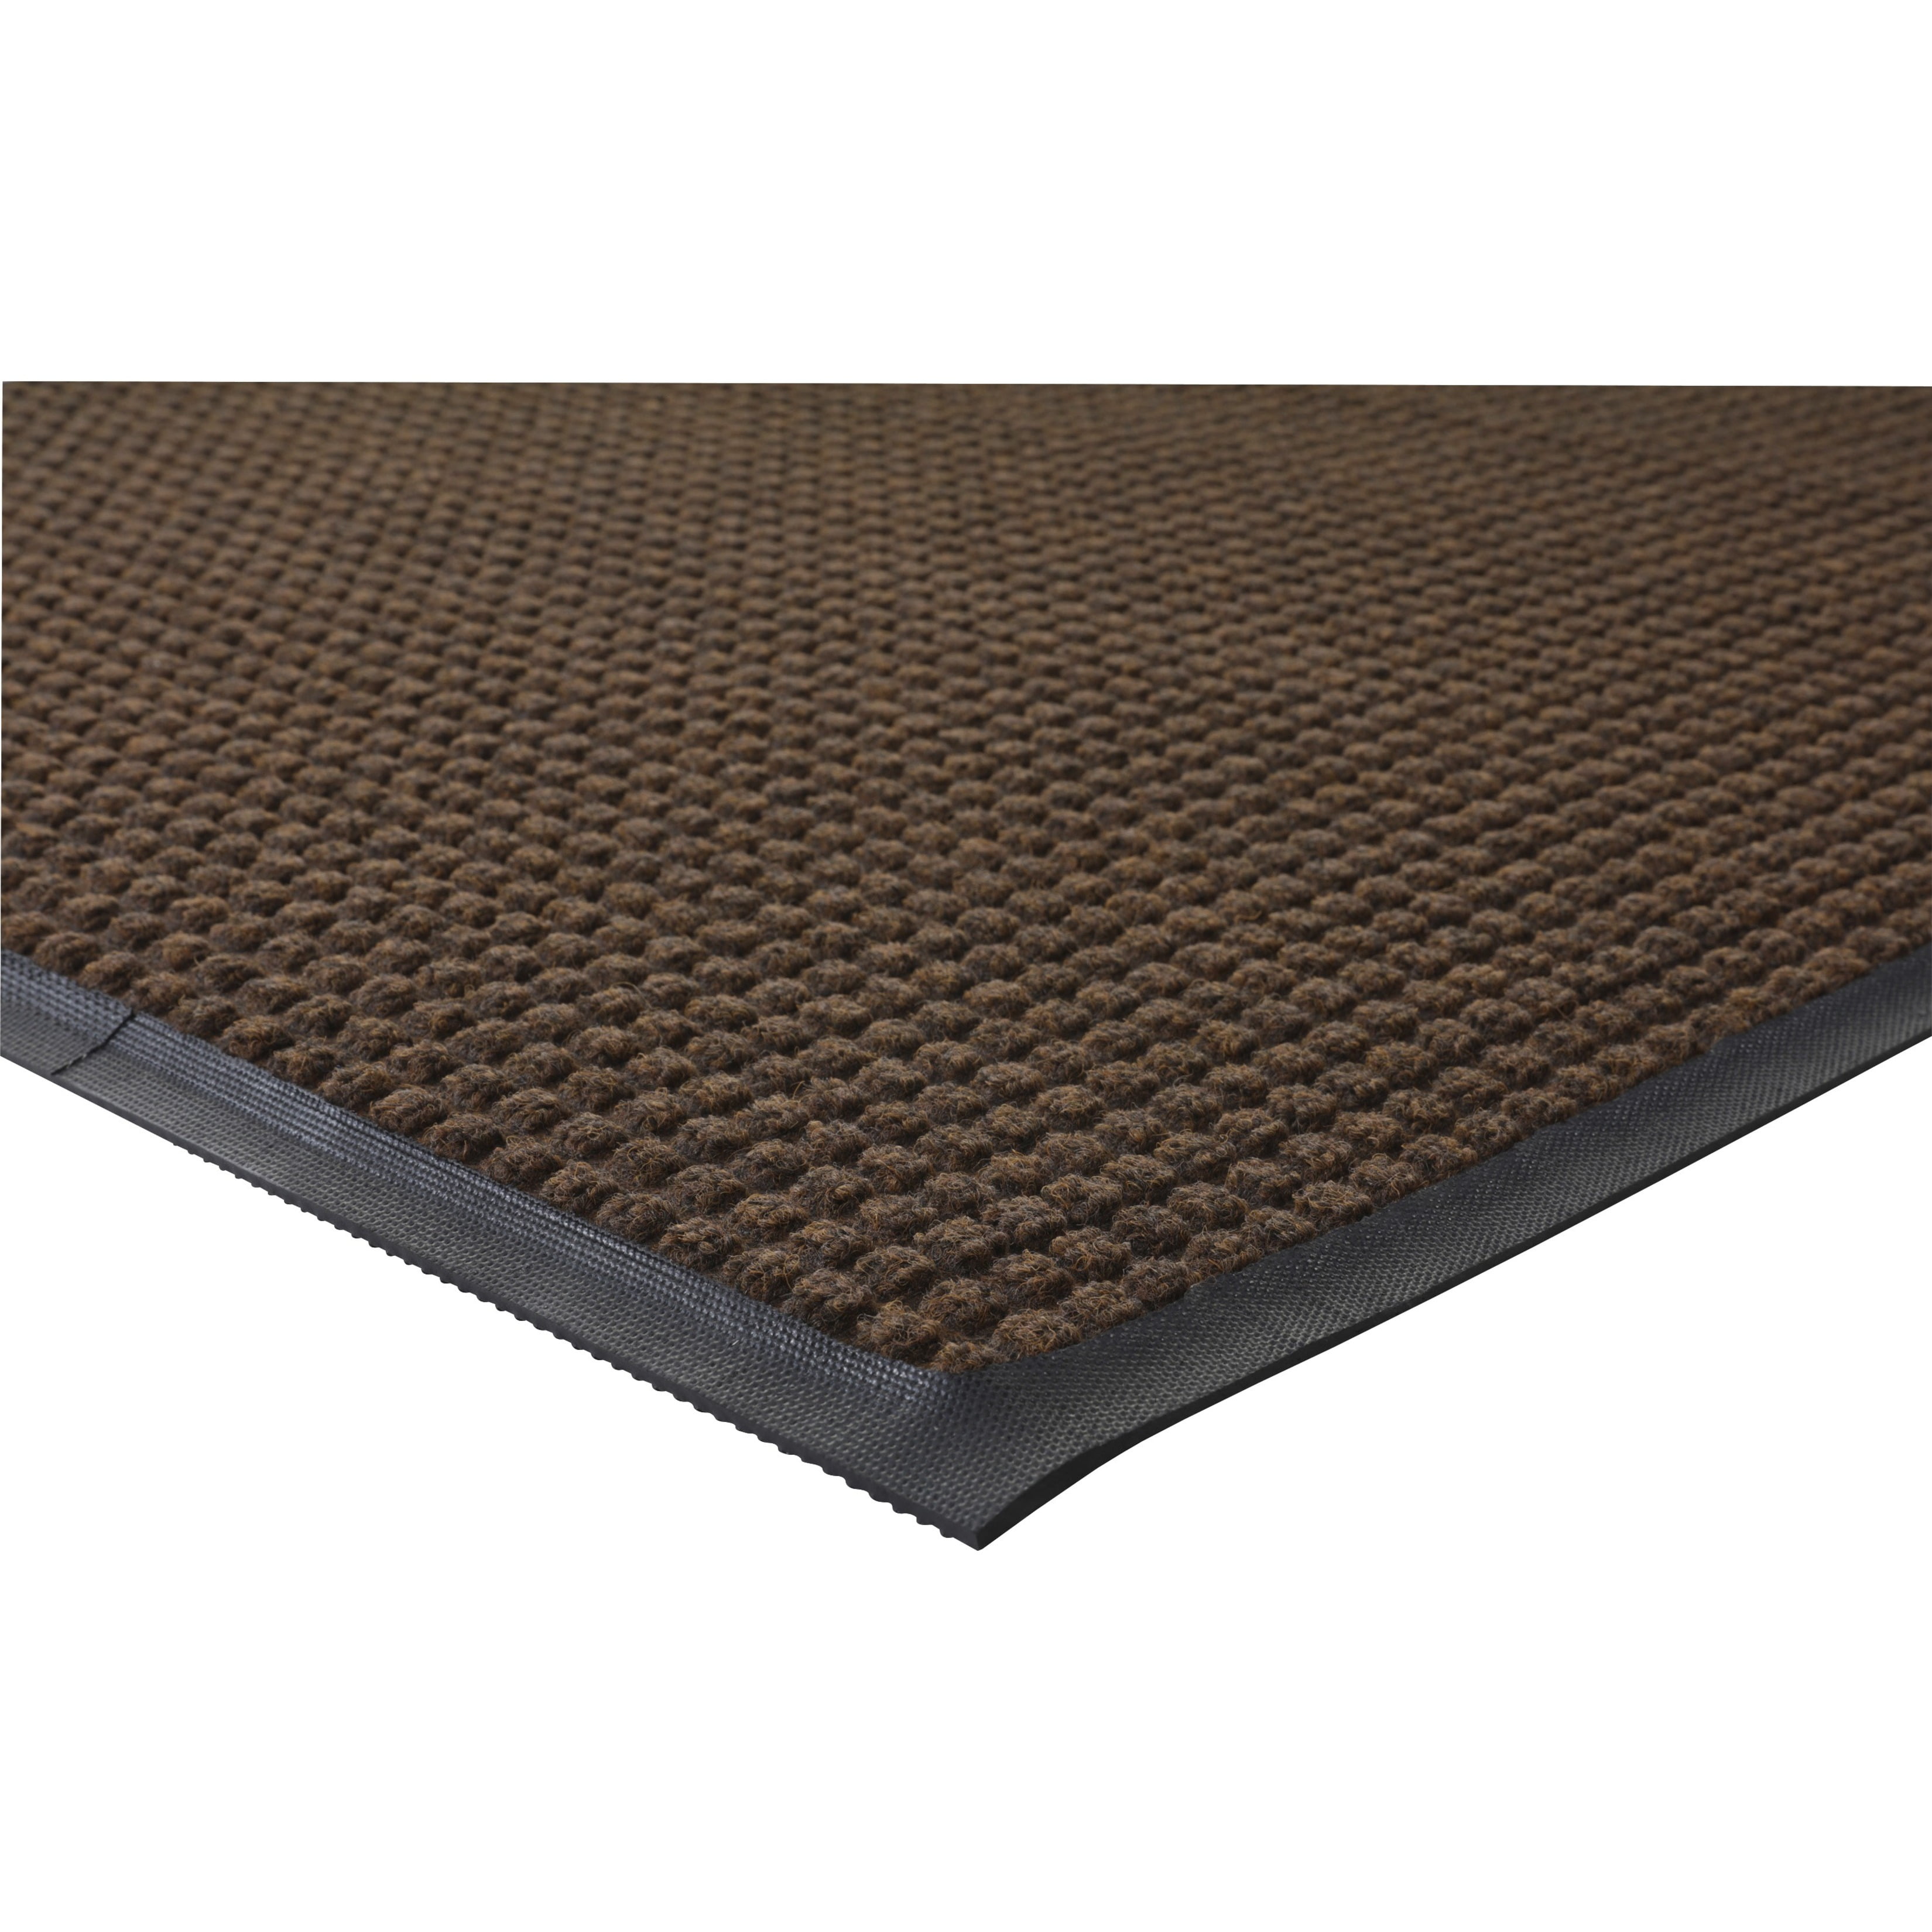 Black 3x4 Rubber with Nylon Carpet Guardian Platinum Series Indoor Wiper Floor Mat 